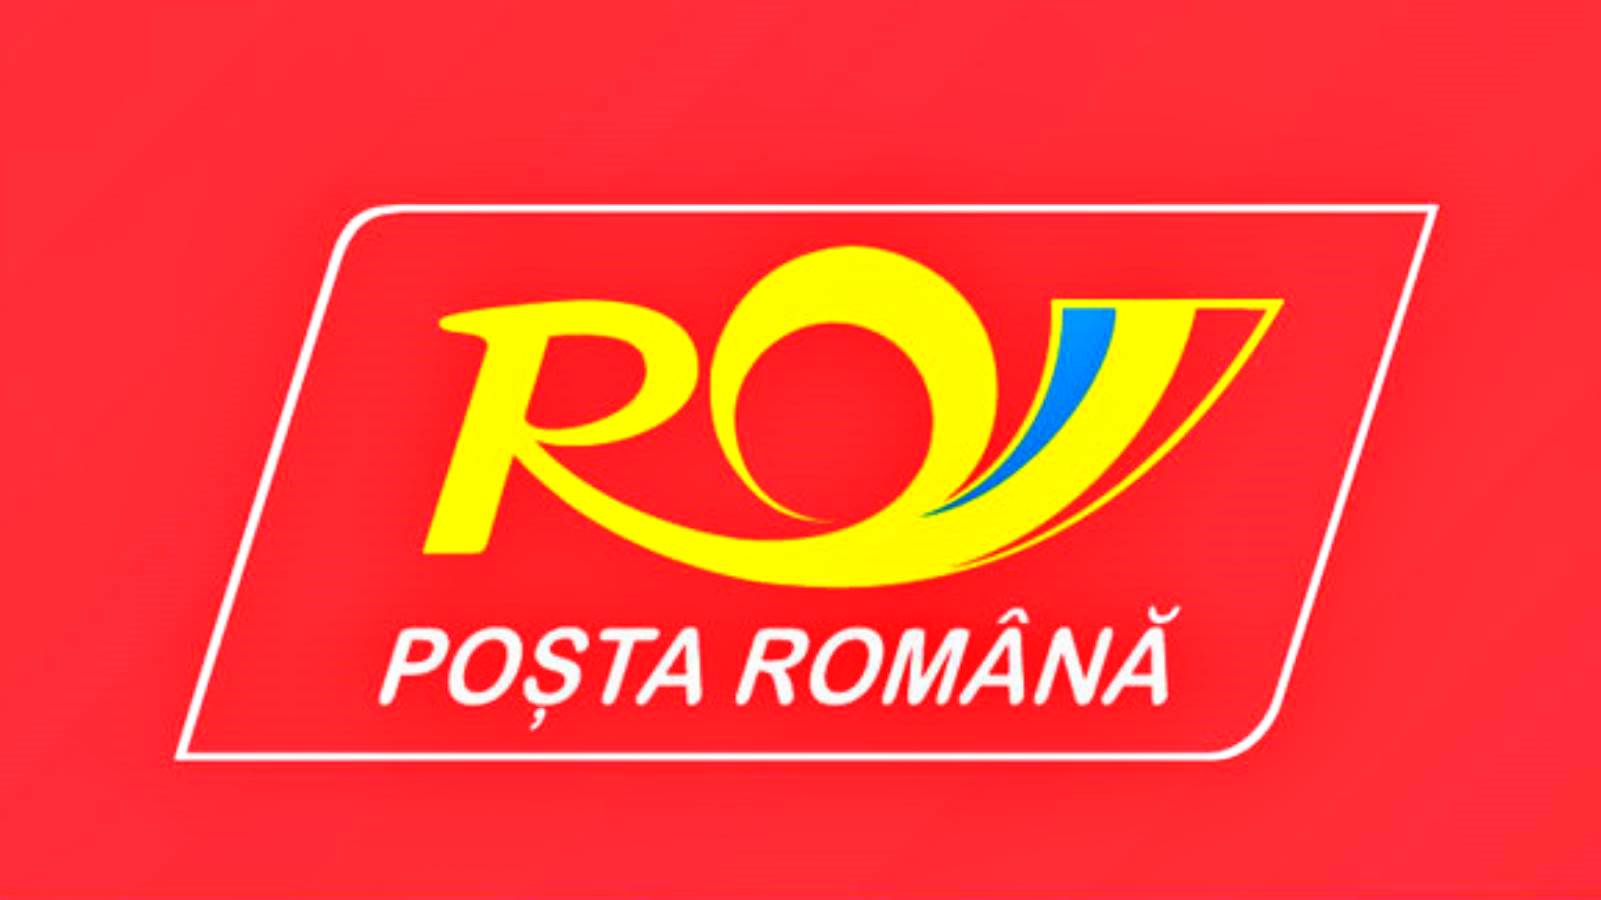 El Correo Rumano pide a los rumanos que se protejan contra el COVID-19